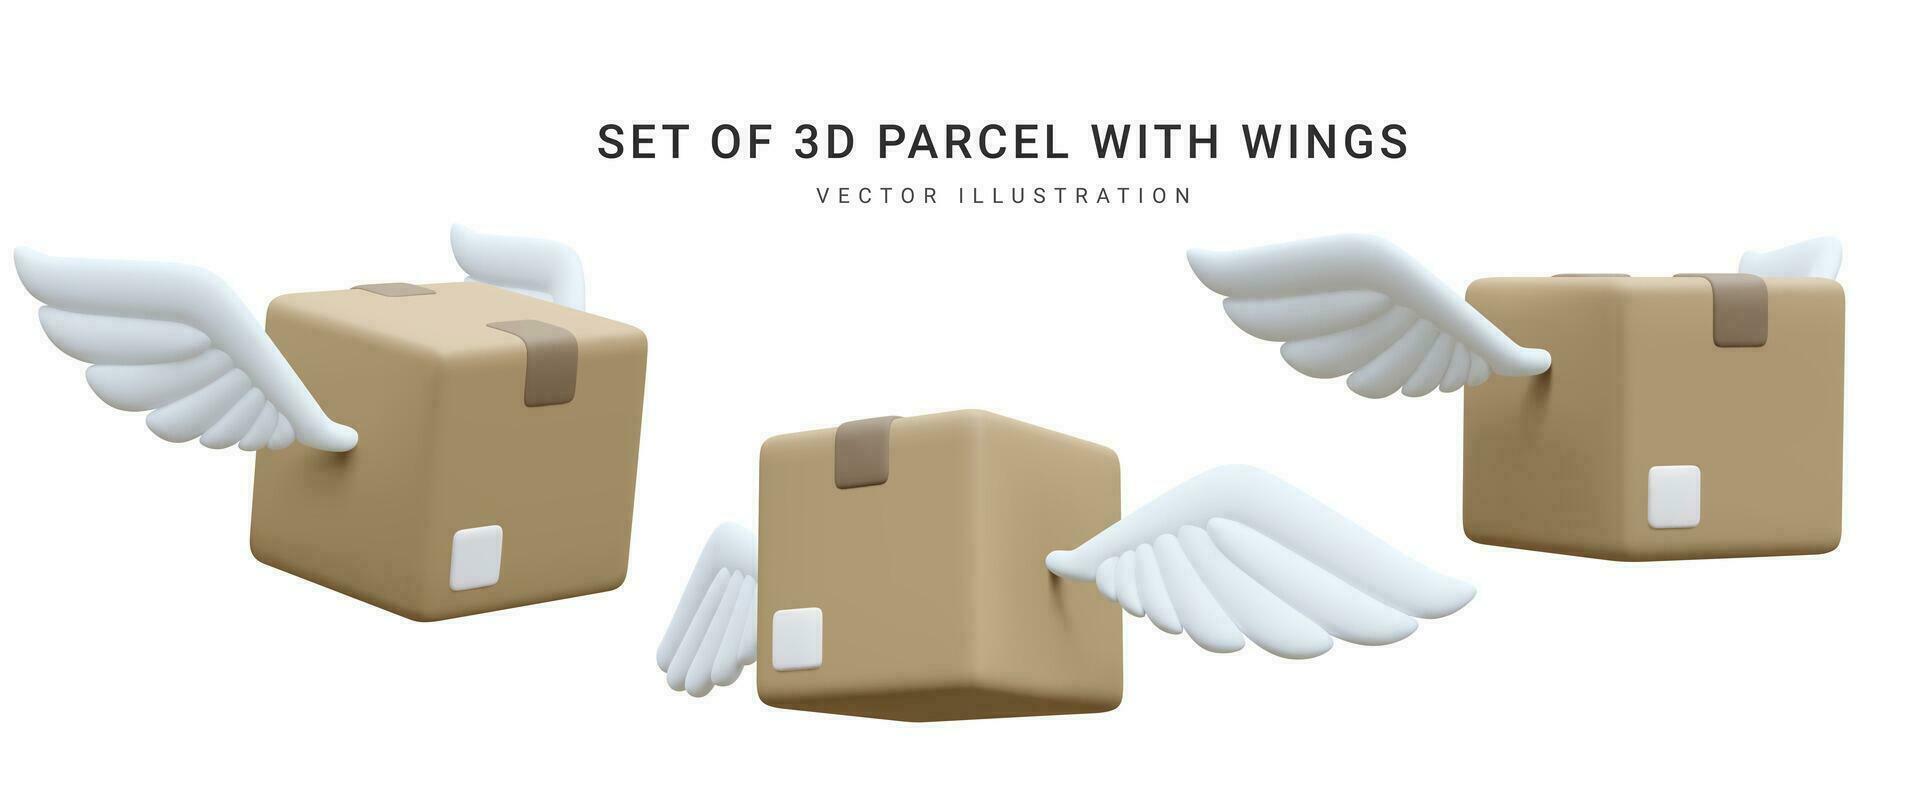 reeks van 3d realistisch pakket met Vleugels geïsoleerd Aan wit achtergrond. karton dozen voor levering onderhoud concept in tekenfilm stijl. vector illustratie